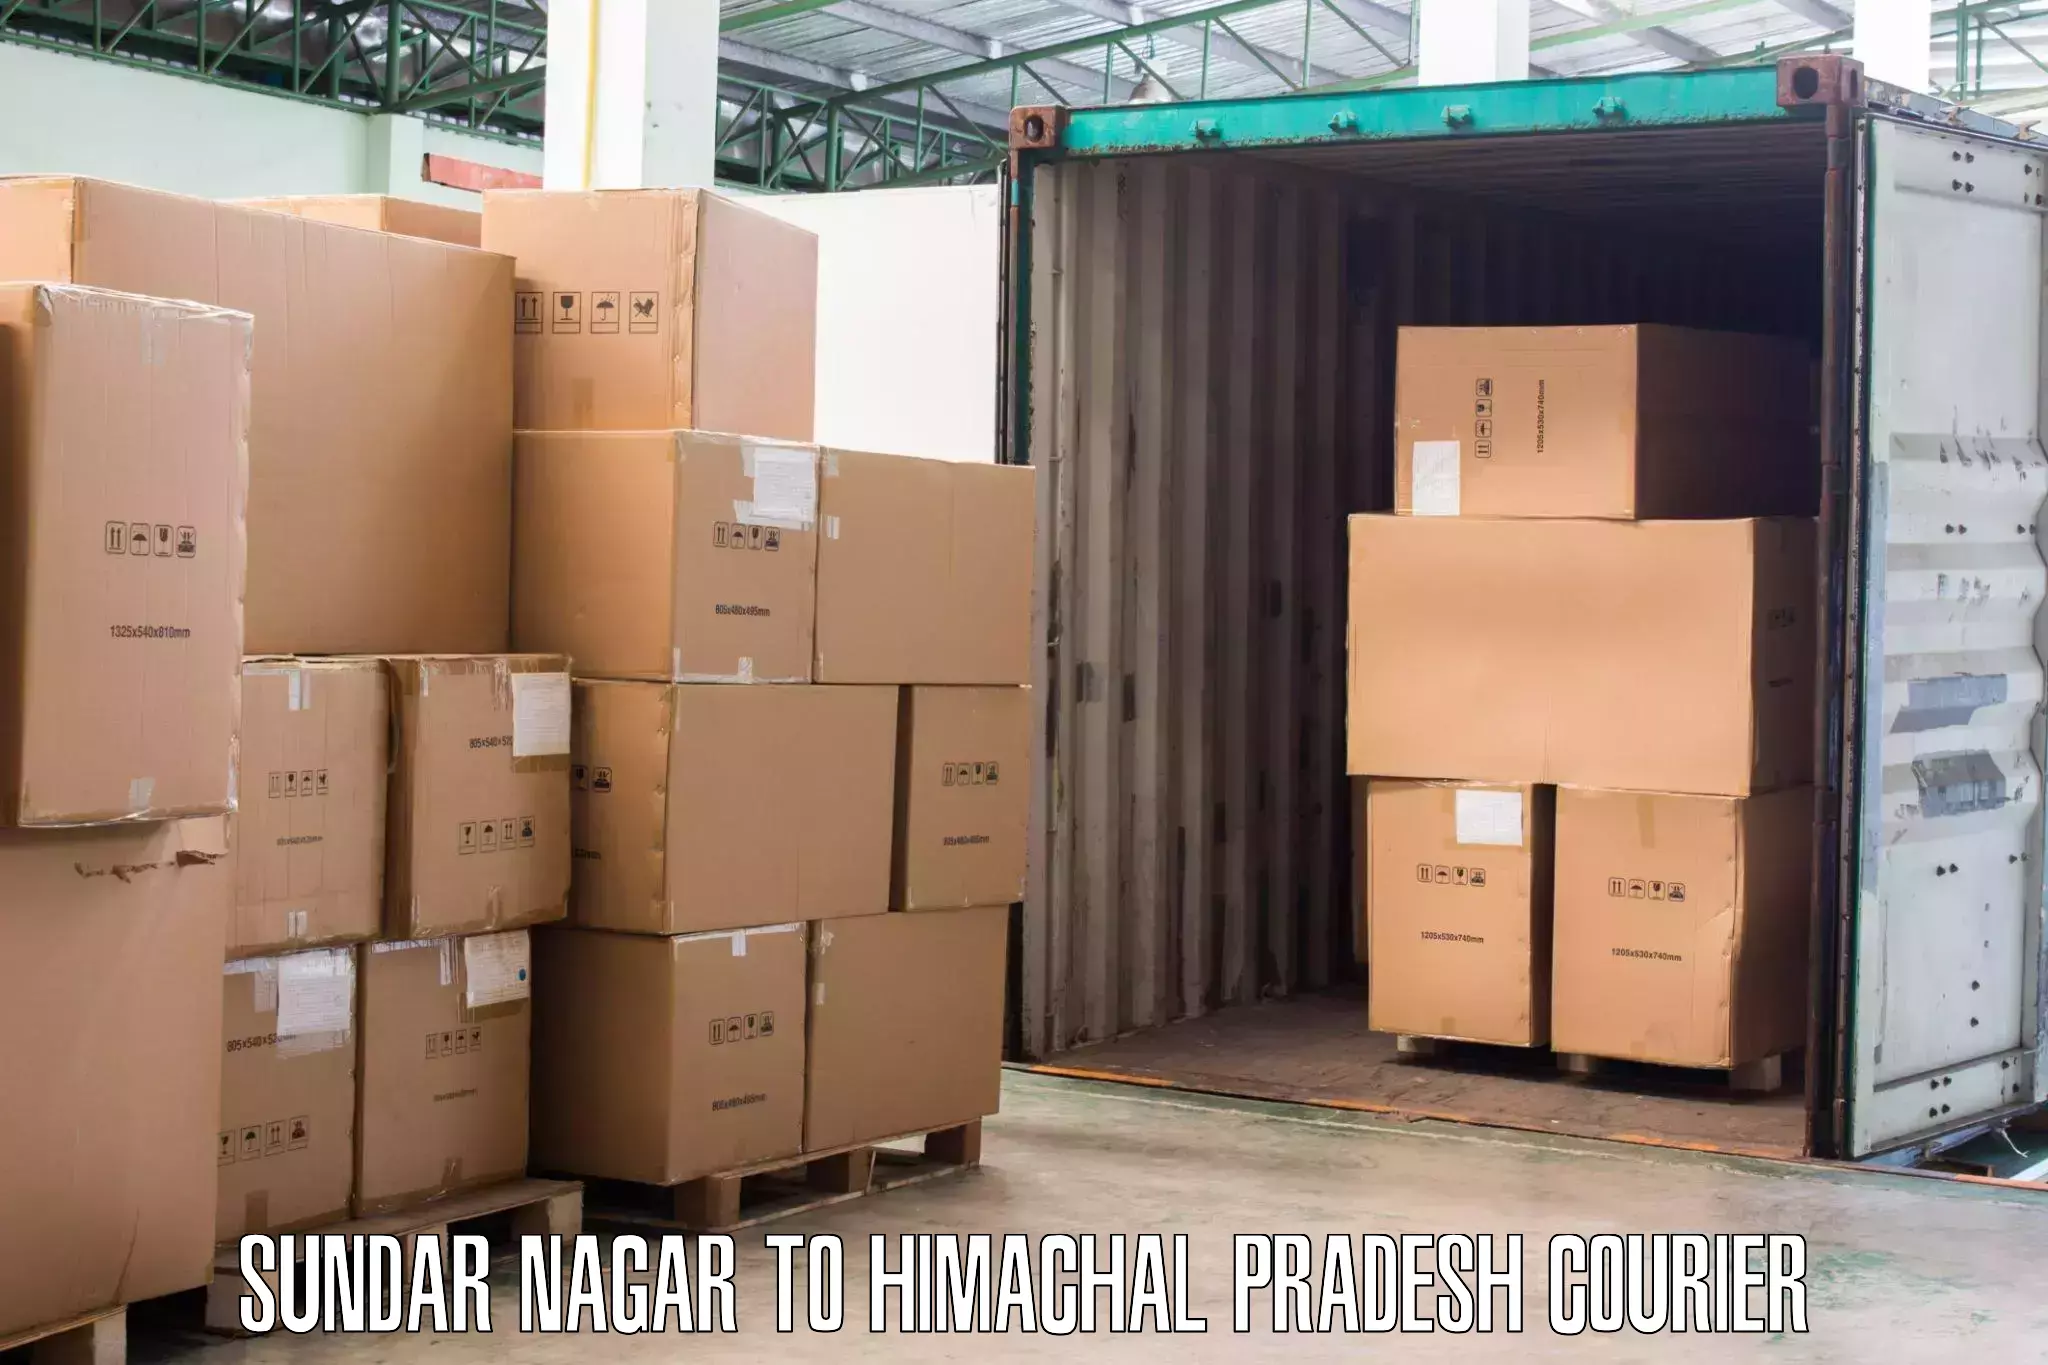 Furniture delivery service Sundar Nagar to Sundla